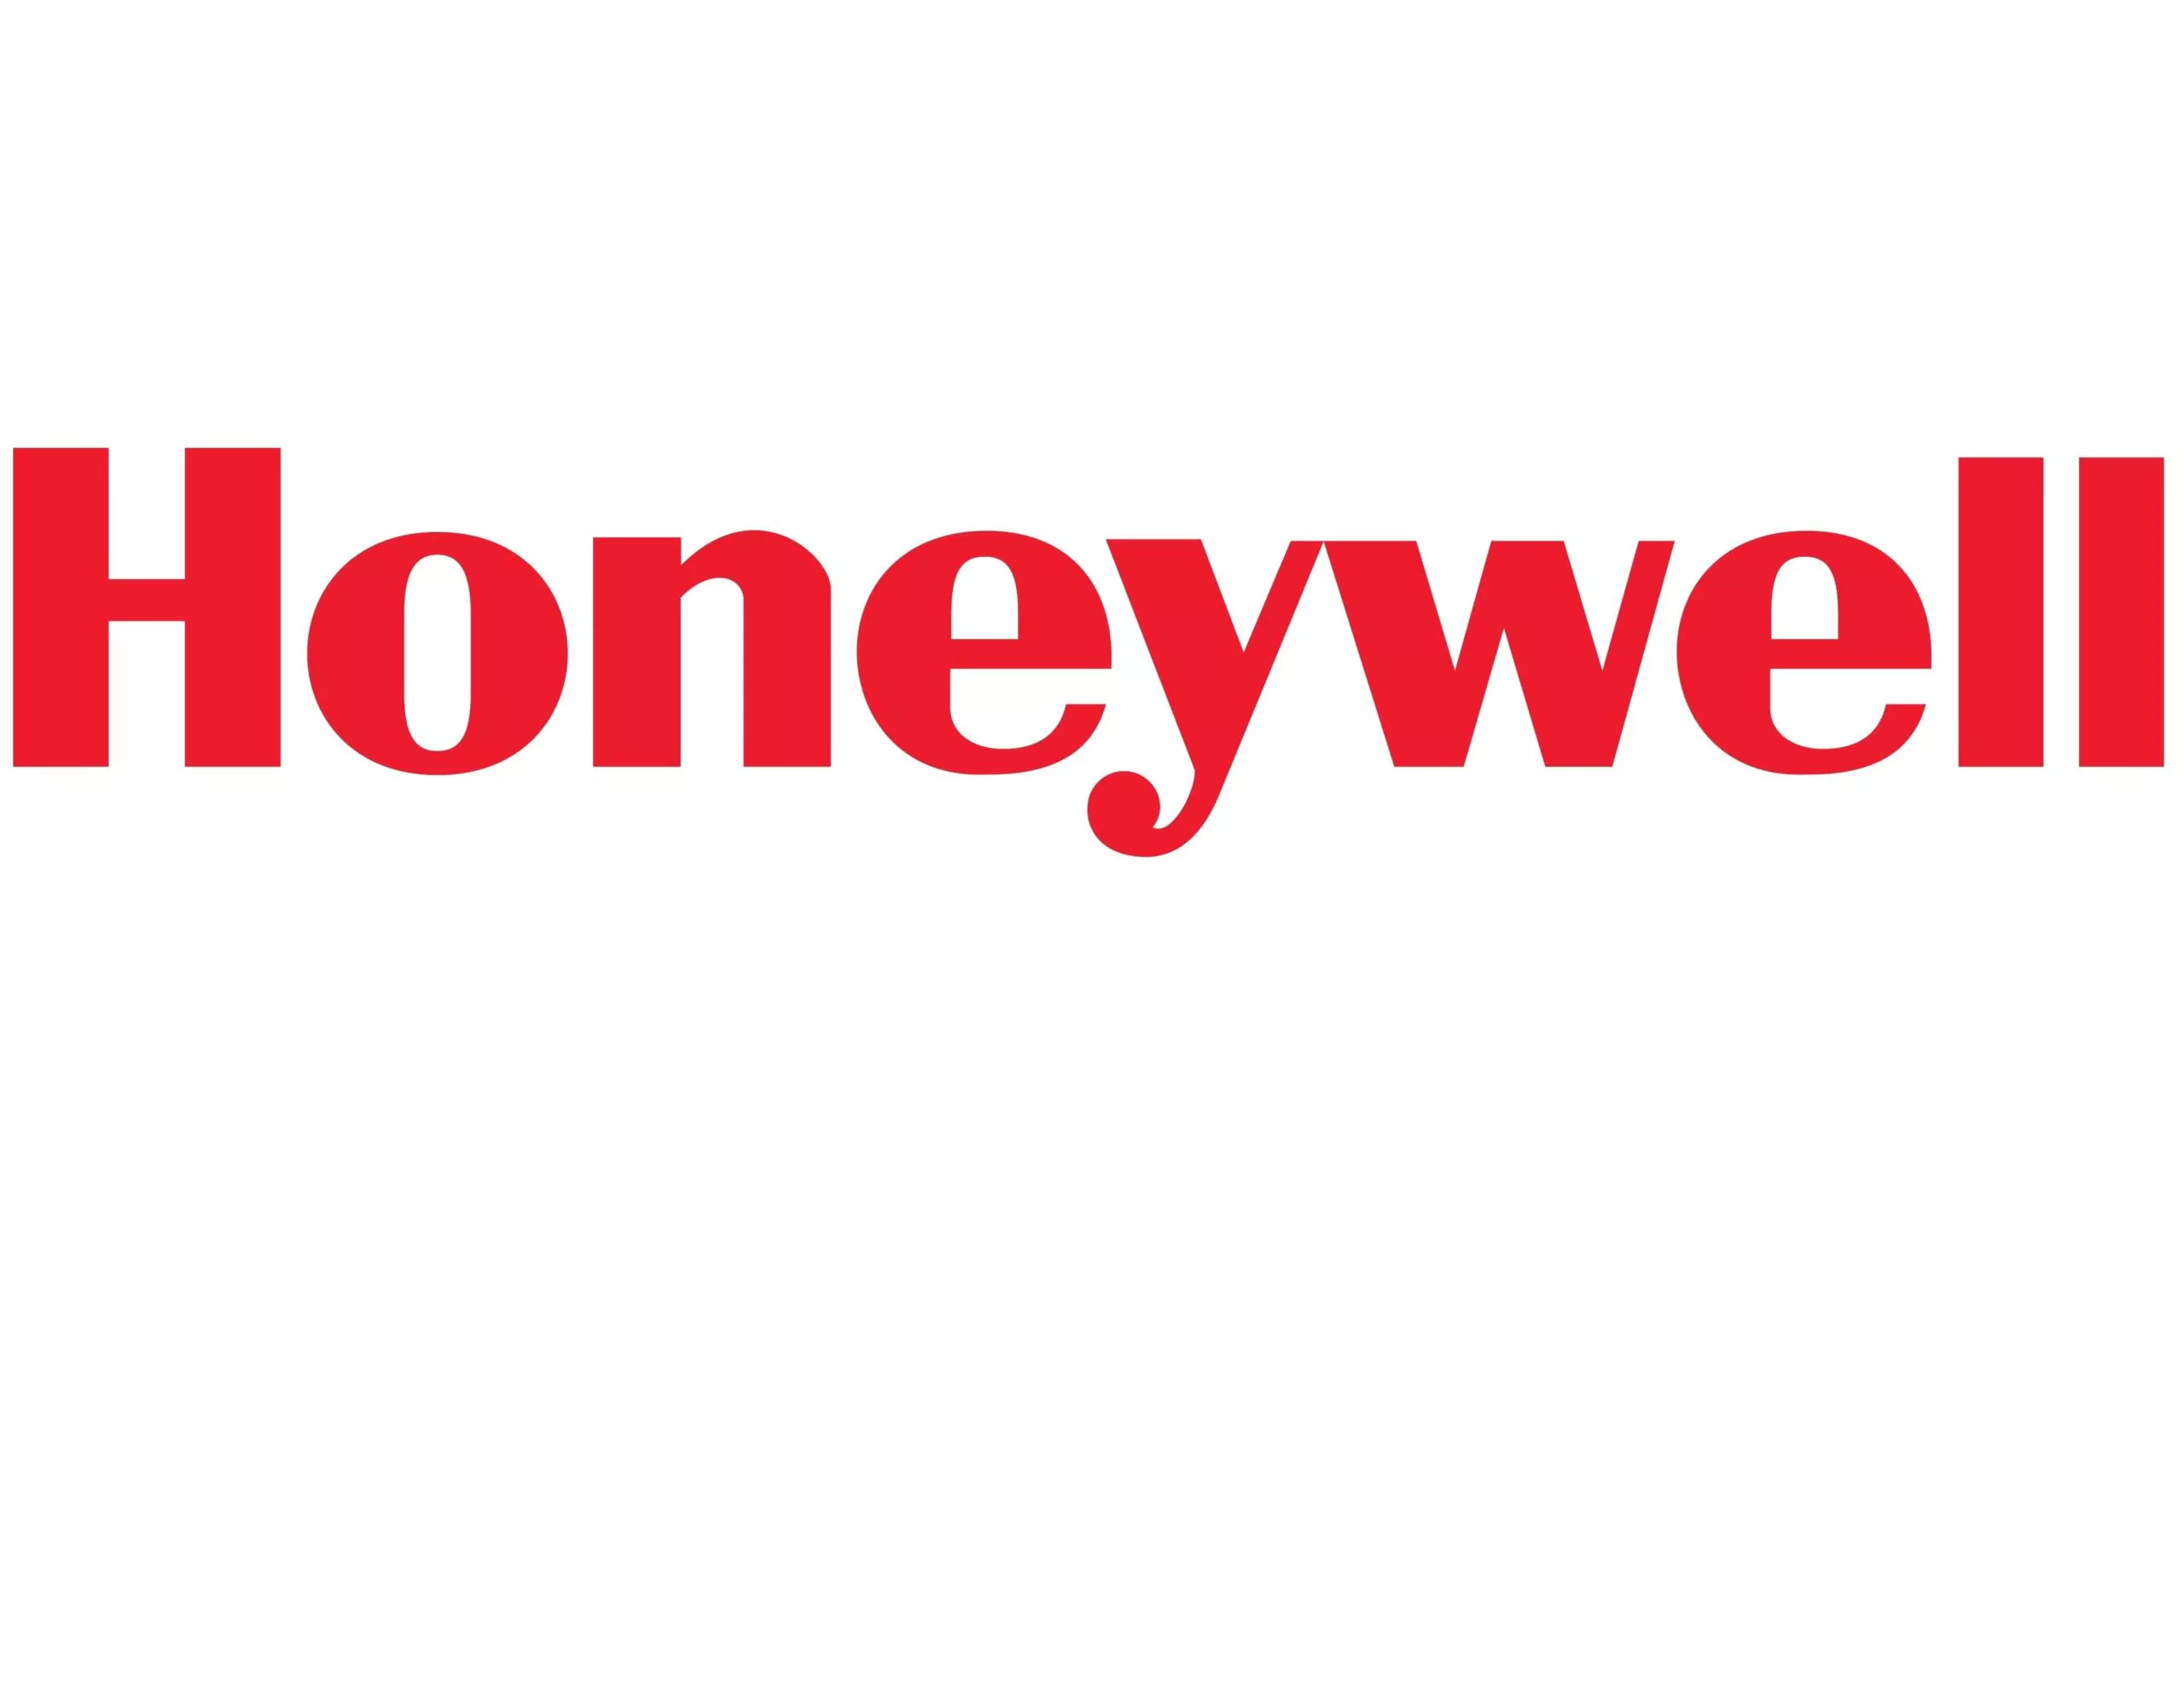 SAP WM - Honeywell Chemicals